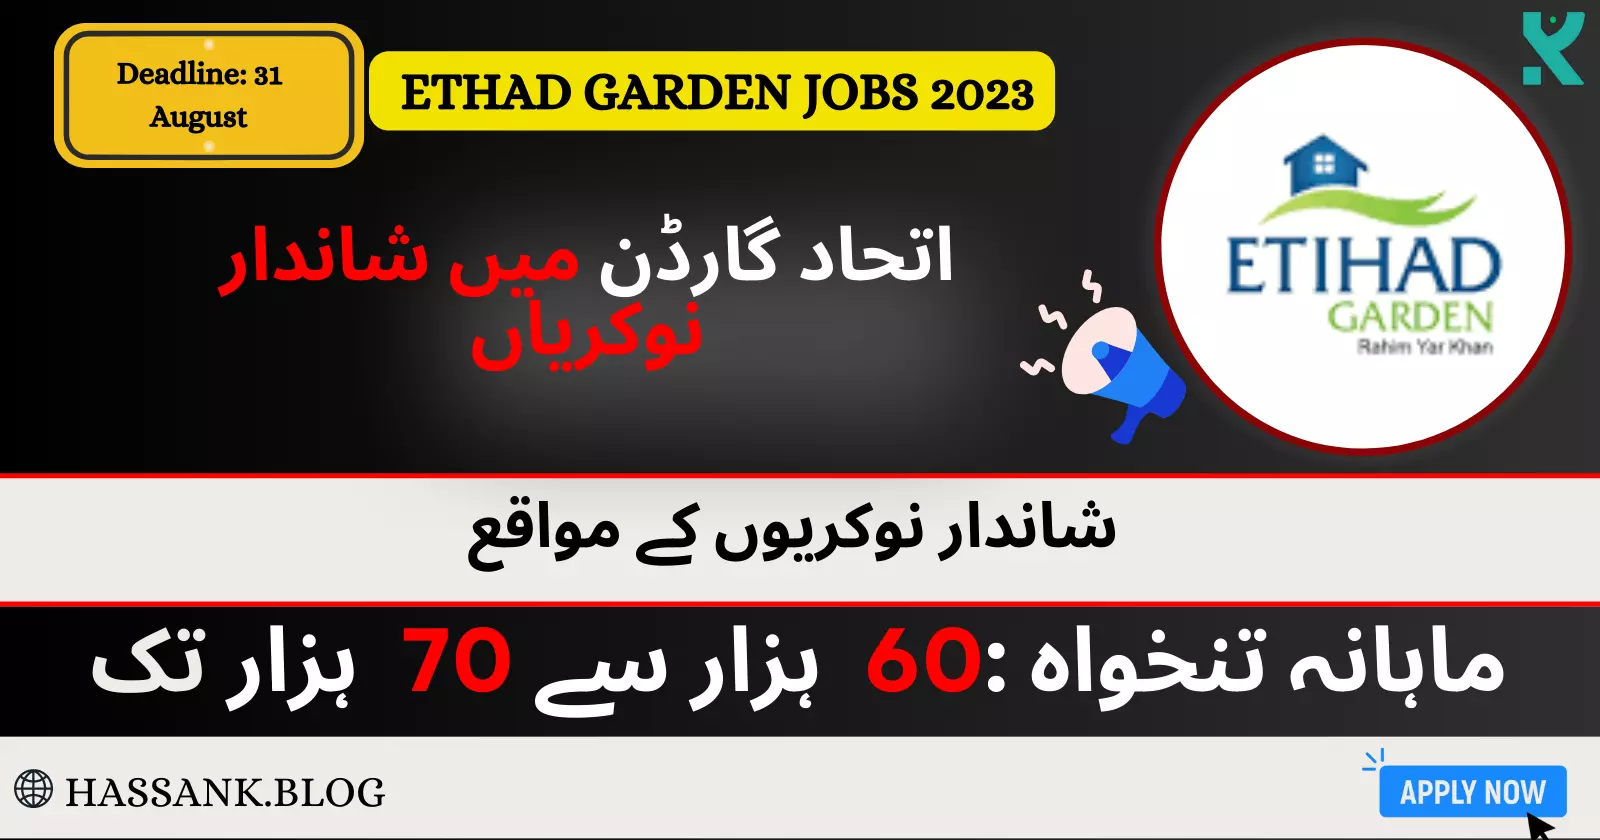 Apply Online for Etihad Garden Jobs